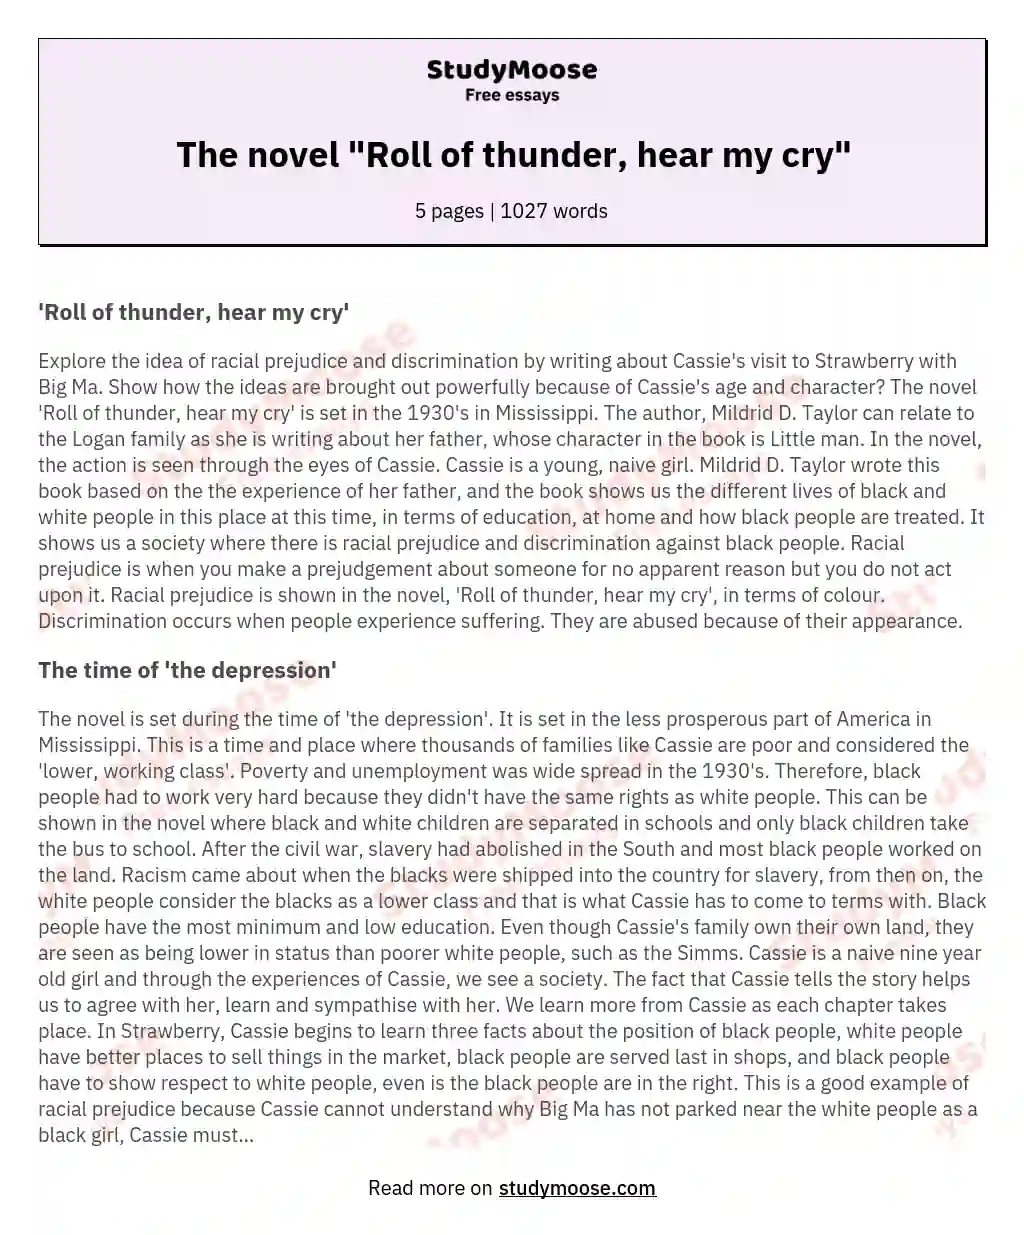 The novel "Roll of thunder, hear my cry" essay